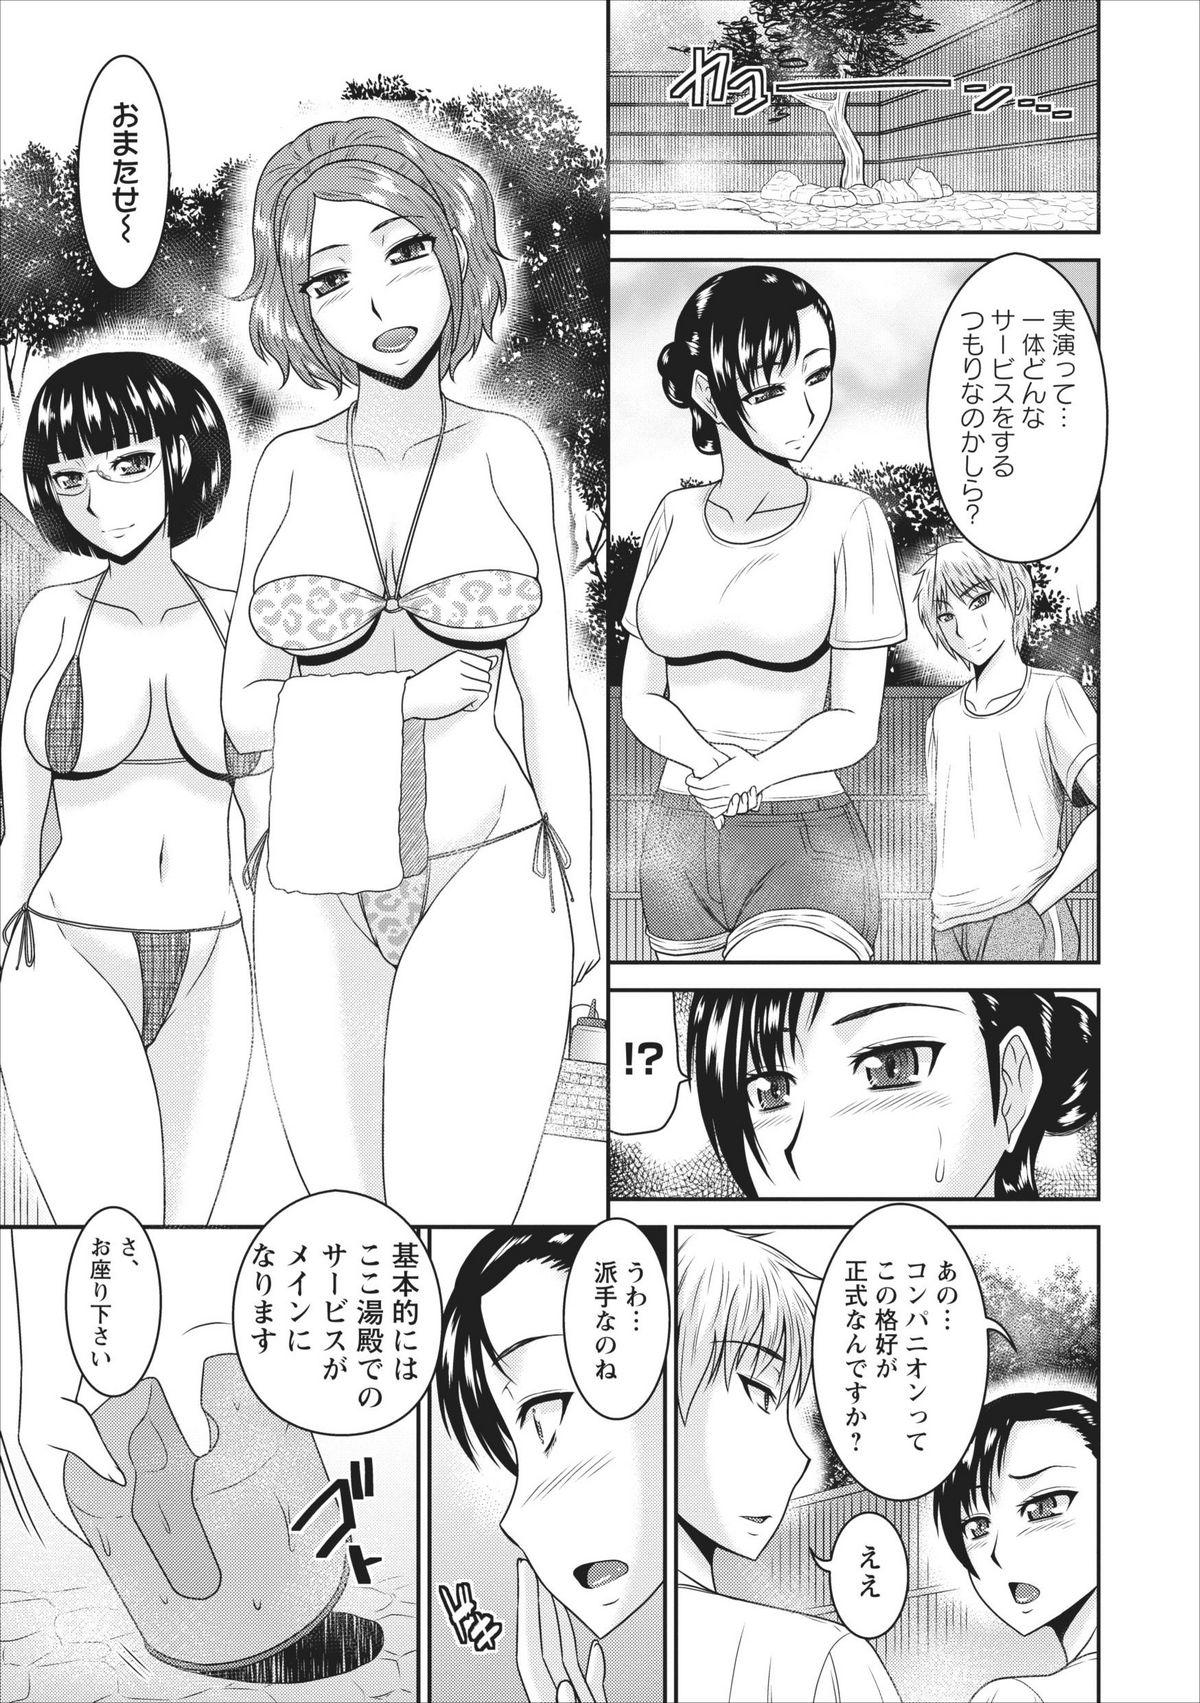 Gemidos Inbi na Yukemuri - Awa no Kuni Ryokan ch.1 Peitos - Page 11